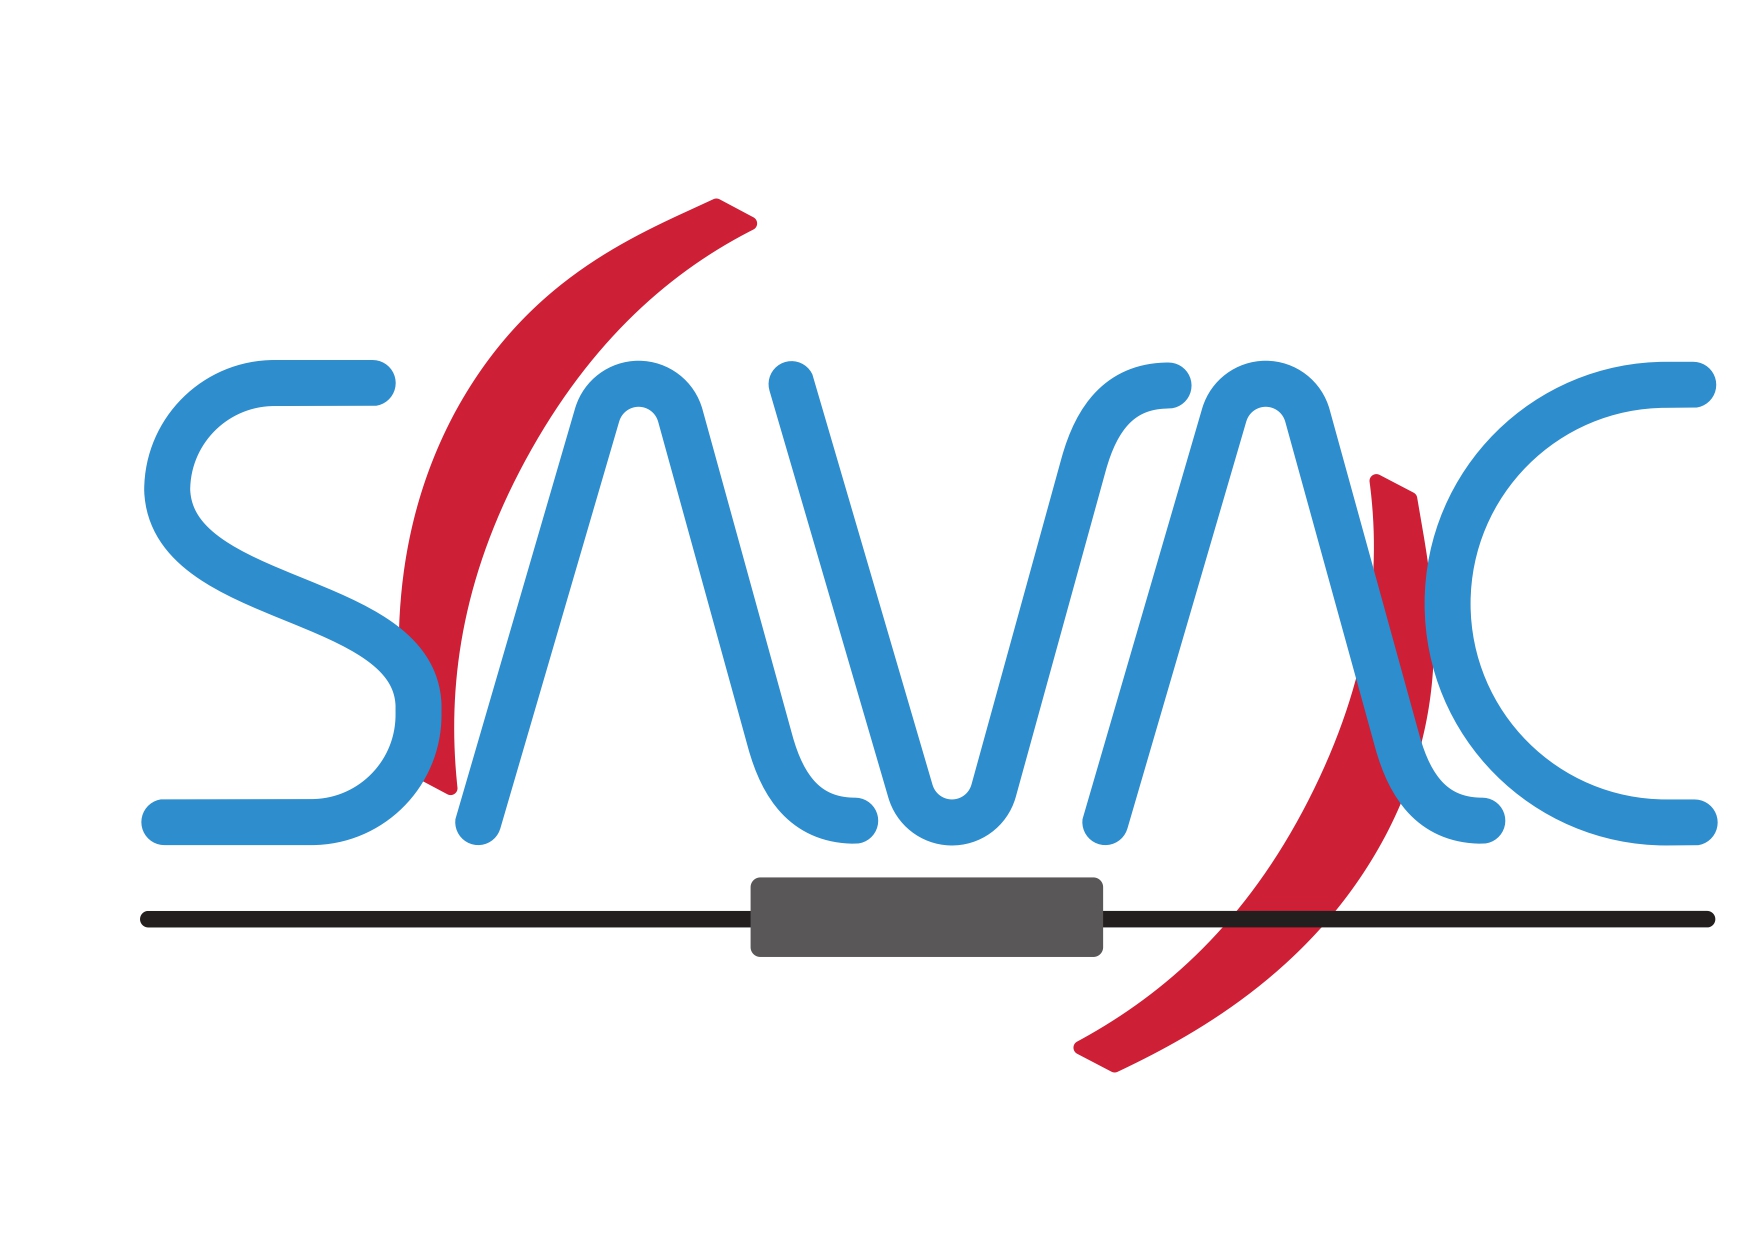 Logo SAVAC